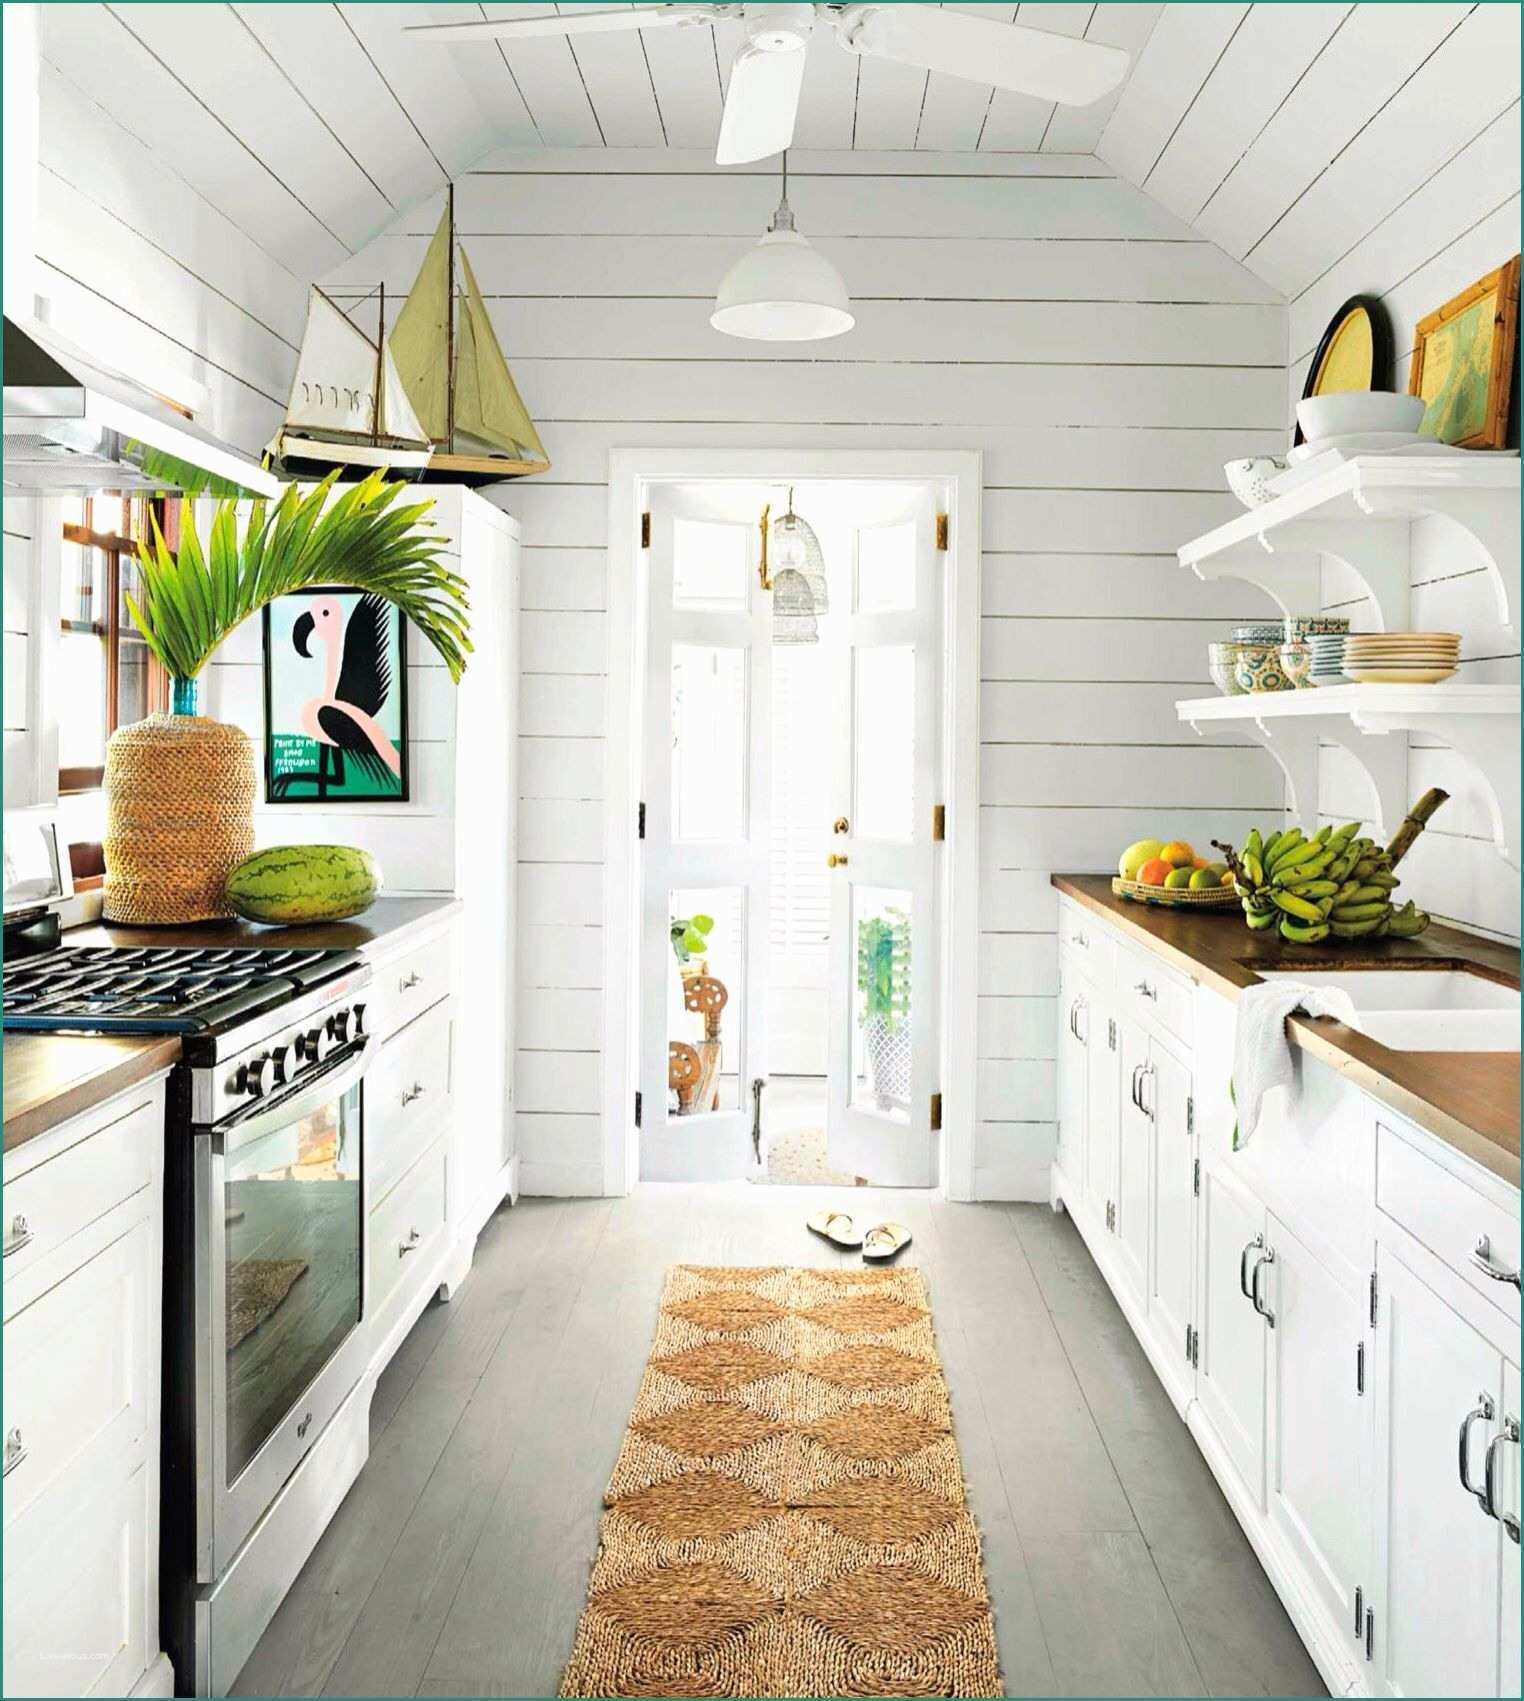 Cucine isola Moderne E Gorgeous Gorgeous Kitchen Denali Pinterest